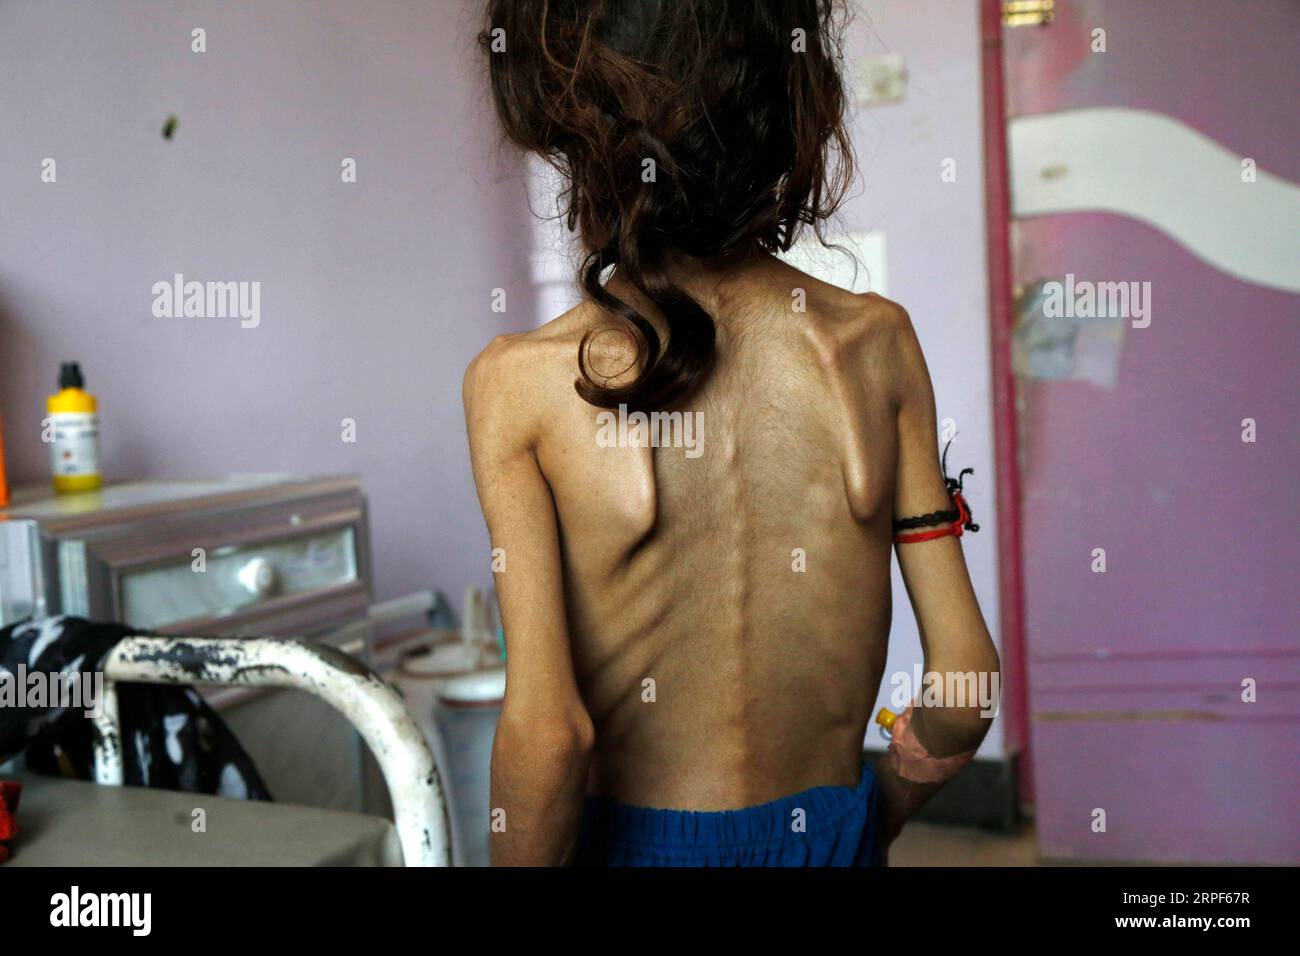 Jemen, Hunger leidende Kinder in Sanaa 190914 -- SANAA, 14. September 2019 -- Sadia Ibrahim steht in ihrem Zimmer, wo sie am 12. September 2019 in einem Zentrum zur Behandlung von Mangelernährung im Al-Sabeen Krankenhaus in Sanaa, Jemen, medizinisch behandelt wird. Sadia Ibrahim hat sich benommen gefühlt, nachdem der Arzt sie als Haut und Knochen diagnostiziert hat. Das 11-jährige, stark unterernährte Mädchen wiegt heute etwa 12 kg. Sie liegt auf einem Bett im Al-Sabeen Krankenhaus in der jemenitischen Hauptstadt Sanaa, um behandelt zu werden, da Ärzte und ihre armen Eltern versuchen, ihr Leben zu retten. ZUM Spiel: Hunger tötet den Jemen Stockfoto